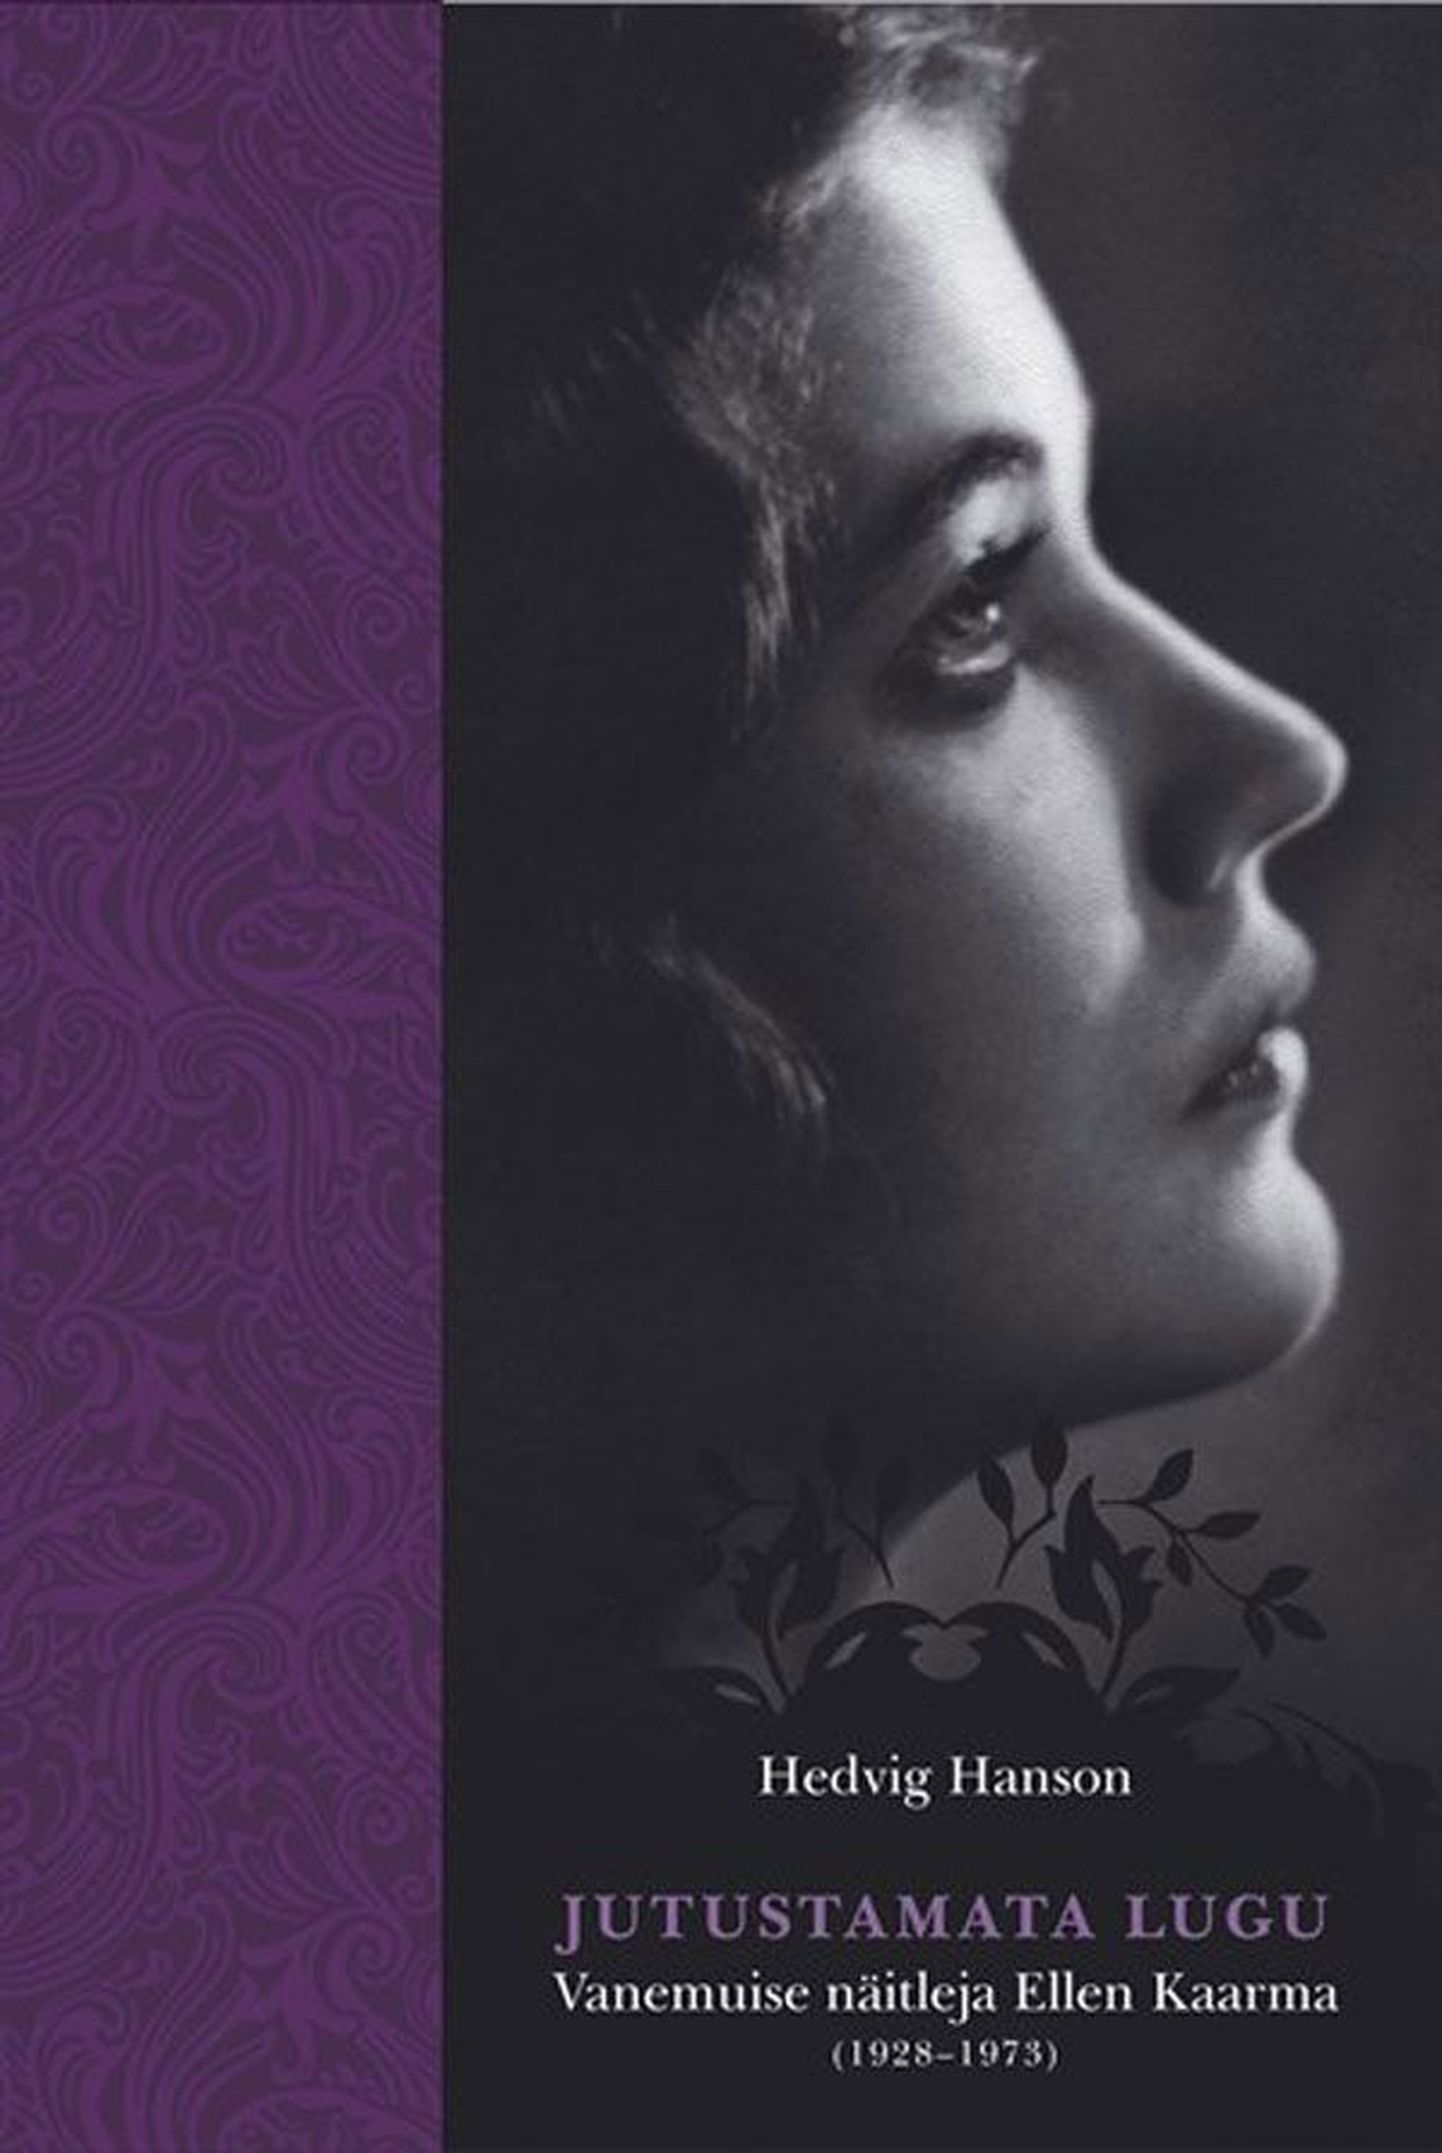 Raamat
Hedvig Hanson
Jutustamata lugu. Vanemuise näitleja Ellen Kaarma (1928–1973)
Tänapäev, 2012. 286 lk.